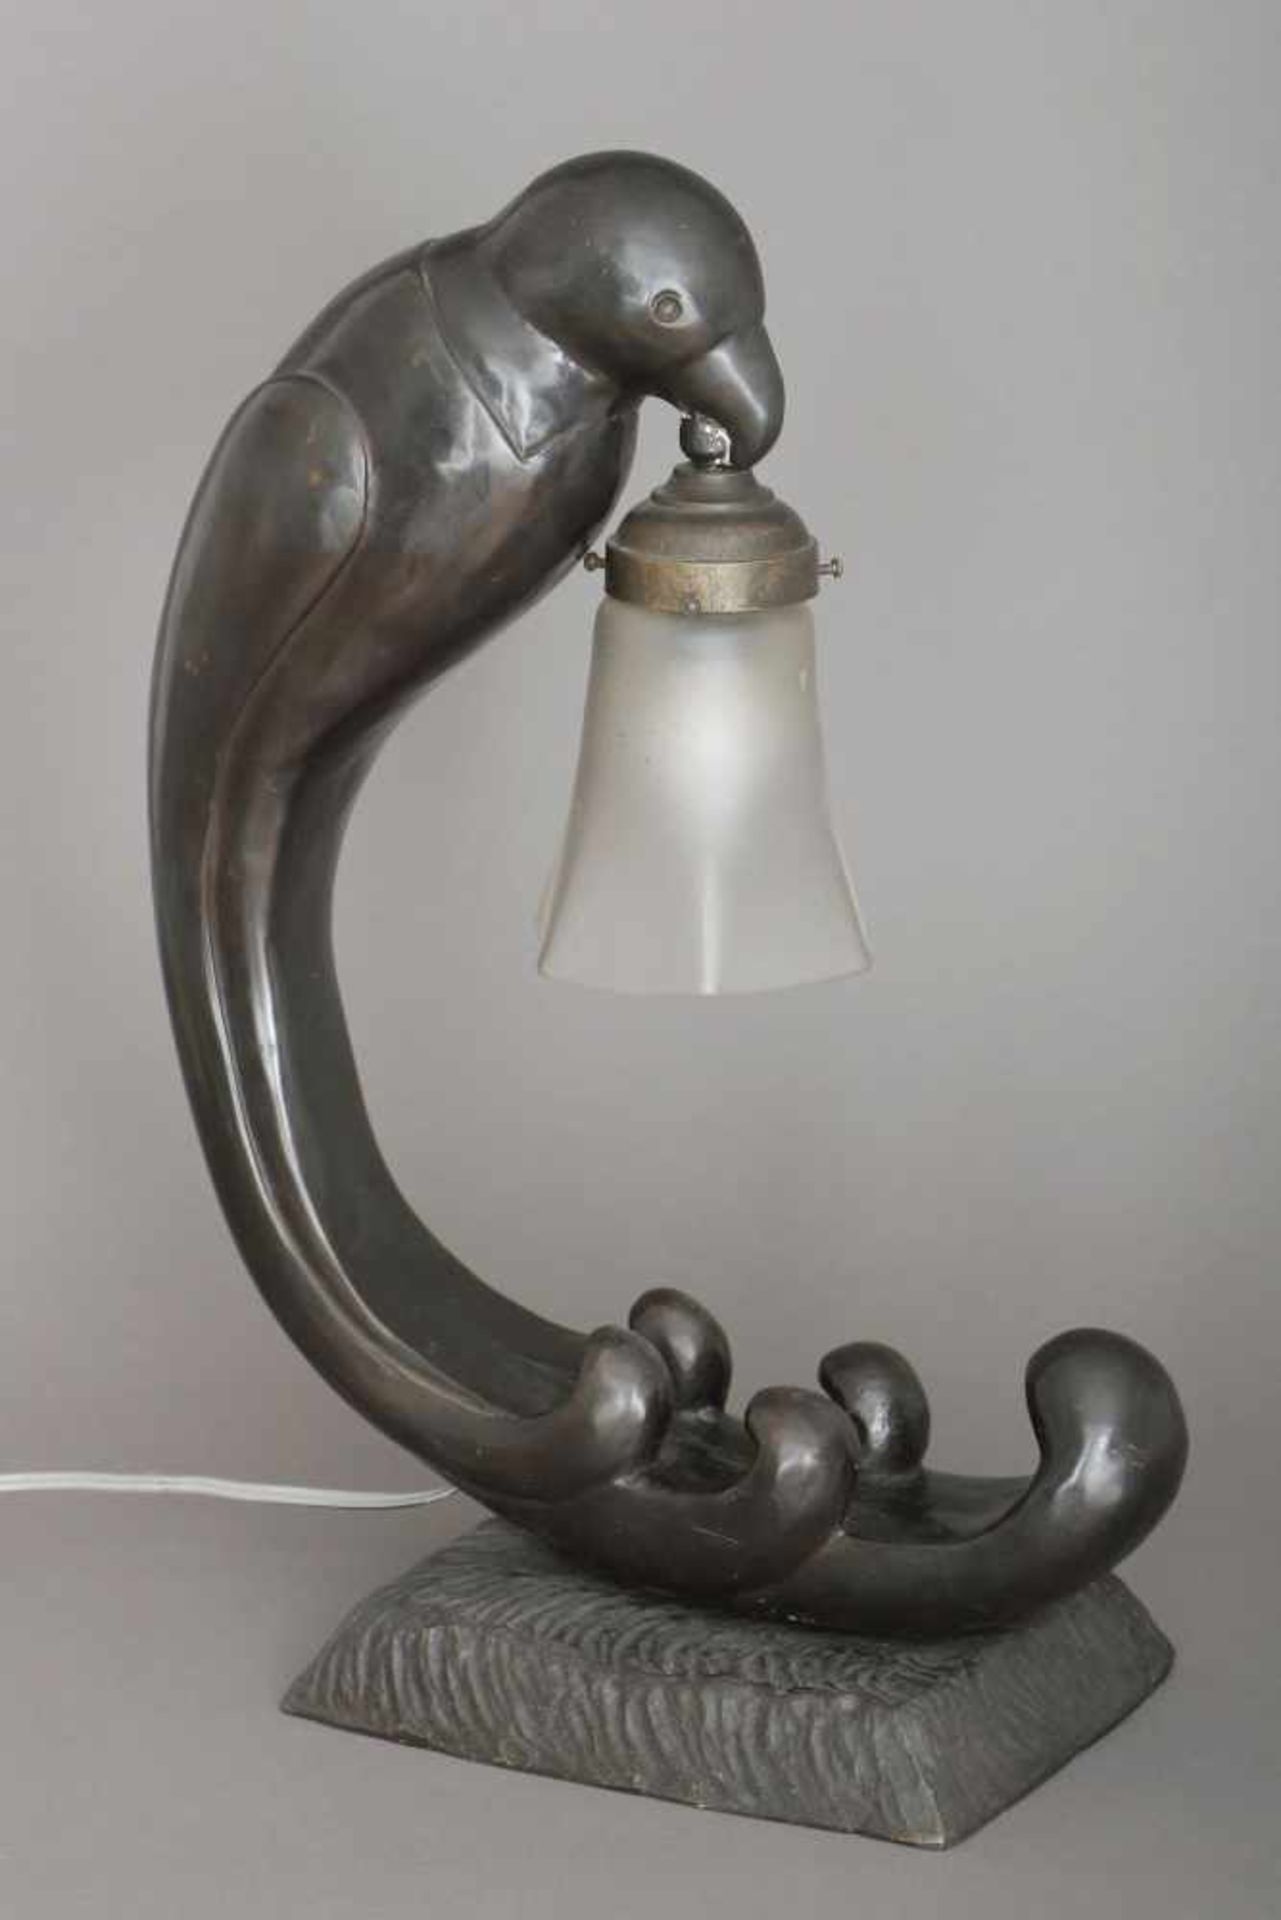 Art Deco Tischlampedunkel patiniertes Metall, Fuß in Form einer Vogelfigur, einen Trichterschirm